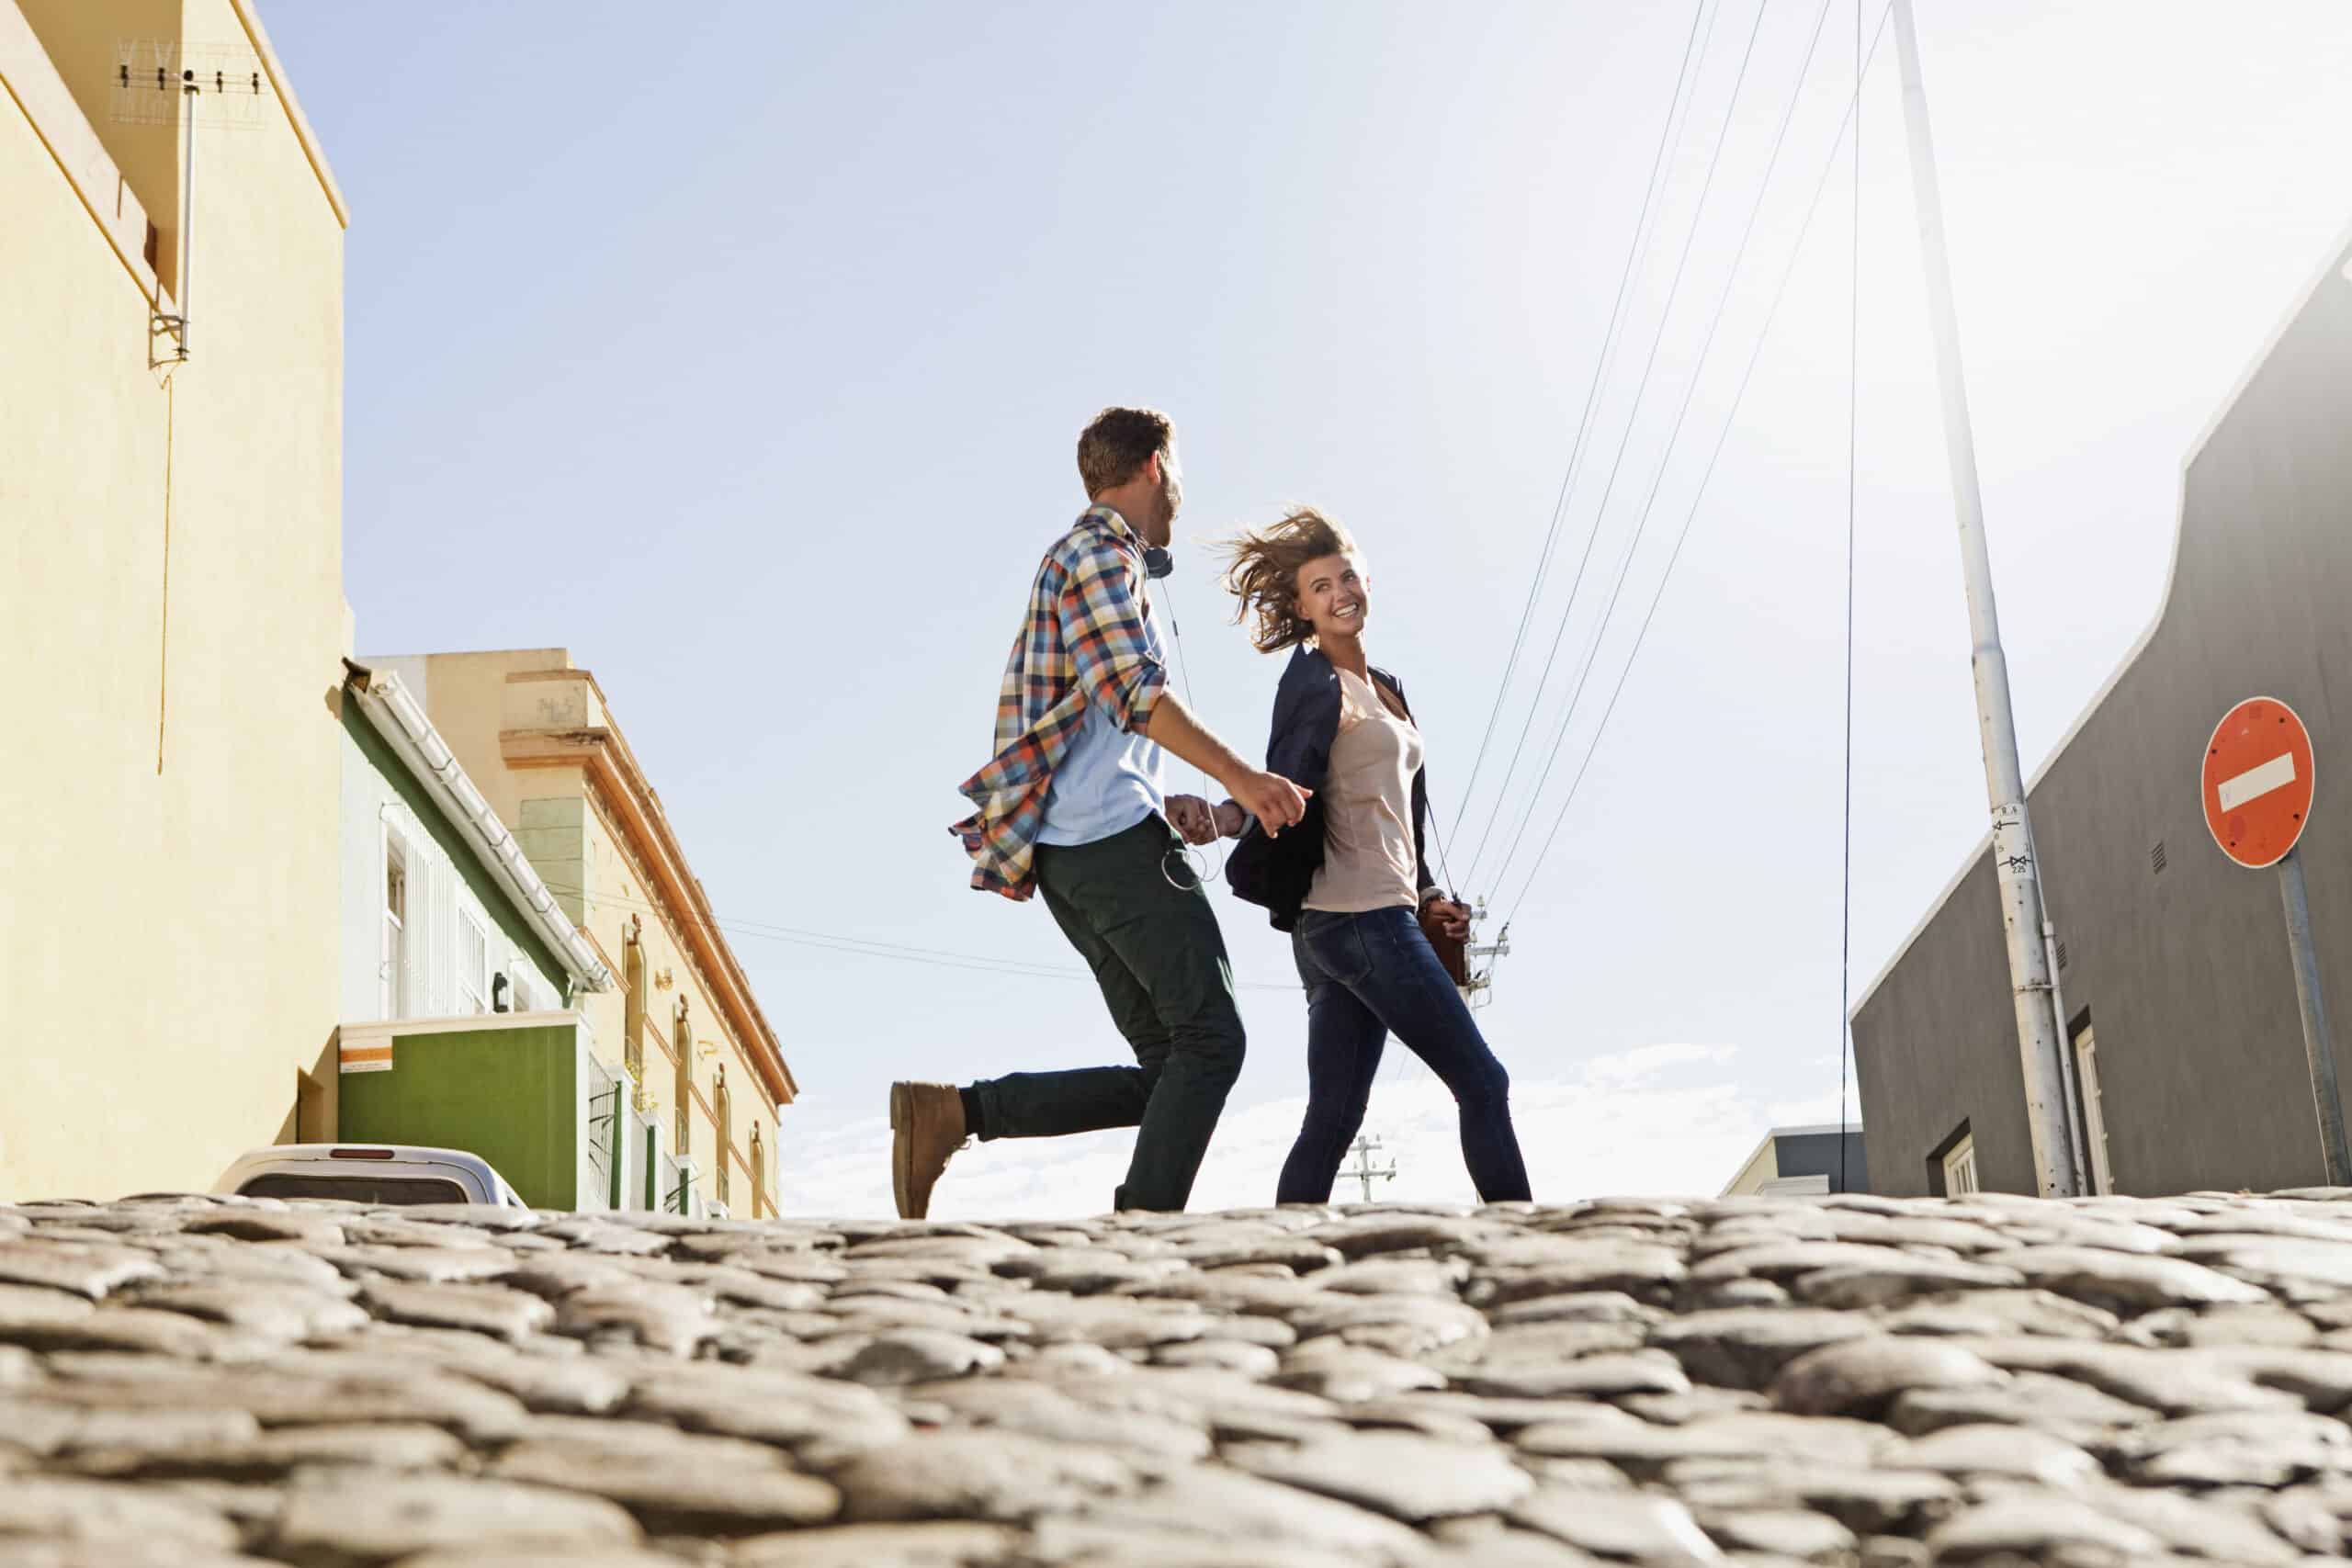 Ein fröhliches junges Paar hält Händchen, während es in einer sonnigen städtischen Umgebung über eine Kopfsteinpflasterstraße geht. Im Hintergrund sind Gebäude und ein Stoppschild zu sehen. © Fotografie Tomas Rodriguez